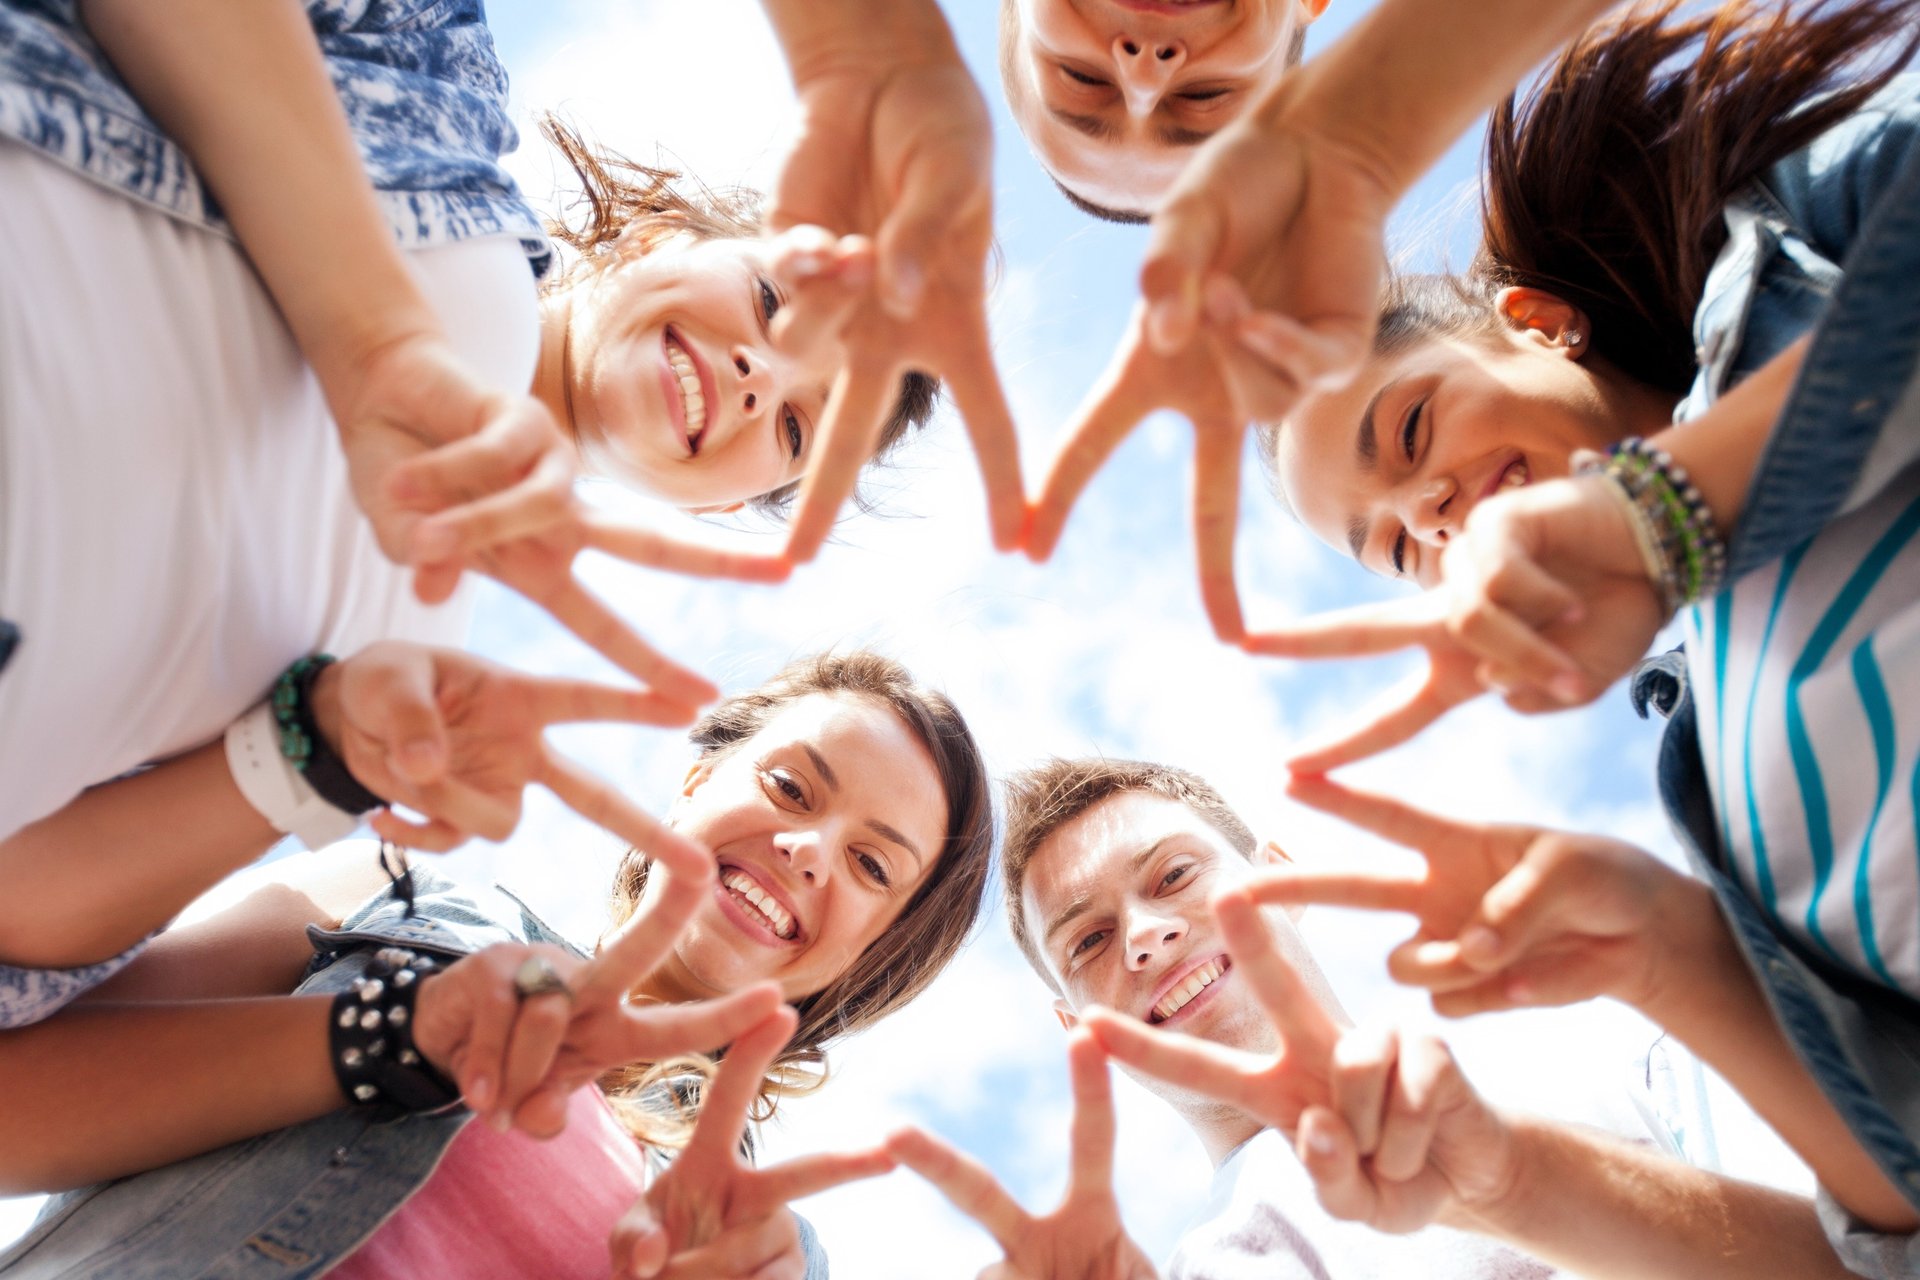 Gruppe von Teenagern, die "Peace-Zeichen" zeigen wurde von unten nach oben fotografiert